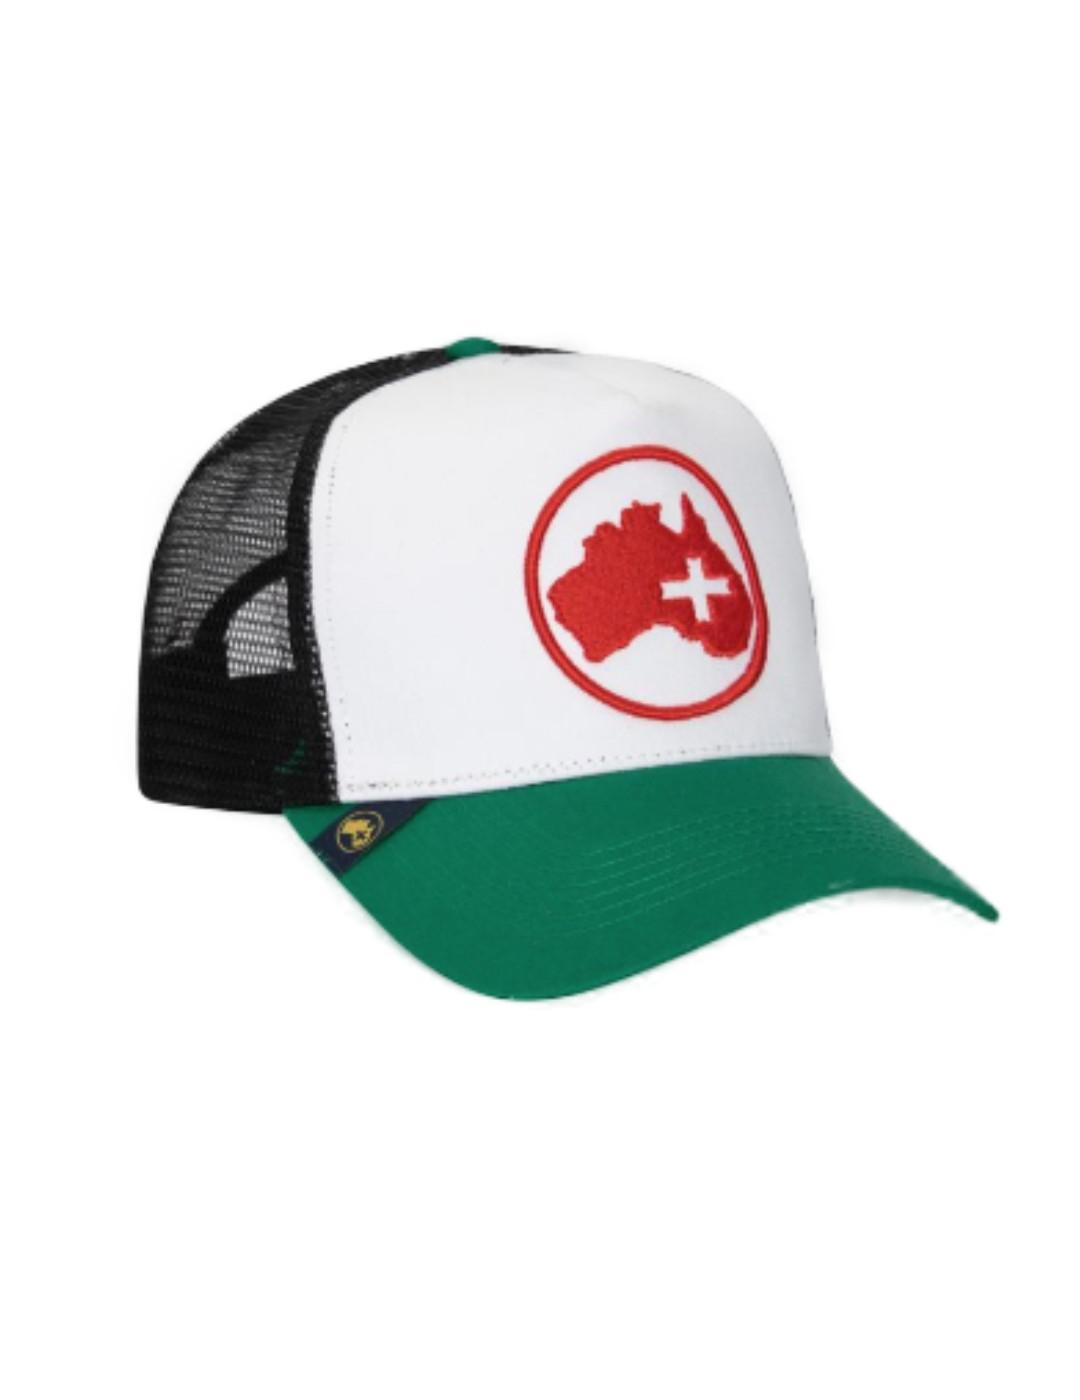 Gorra Altonadock blanco verde y marino con logo rojo unisex